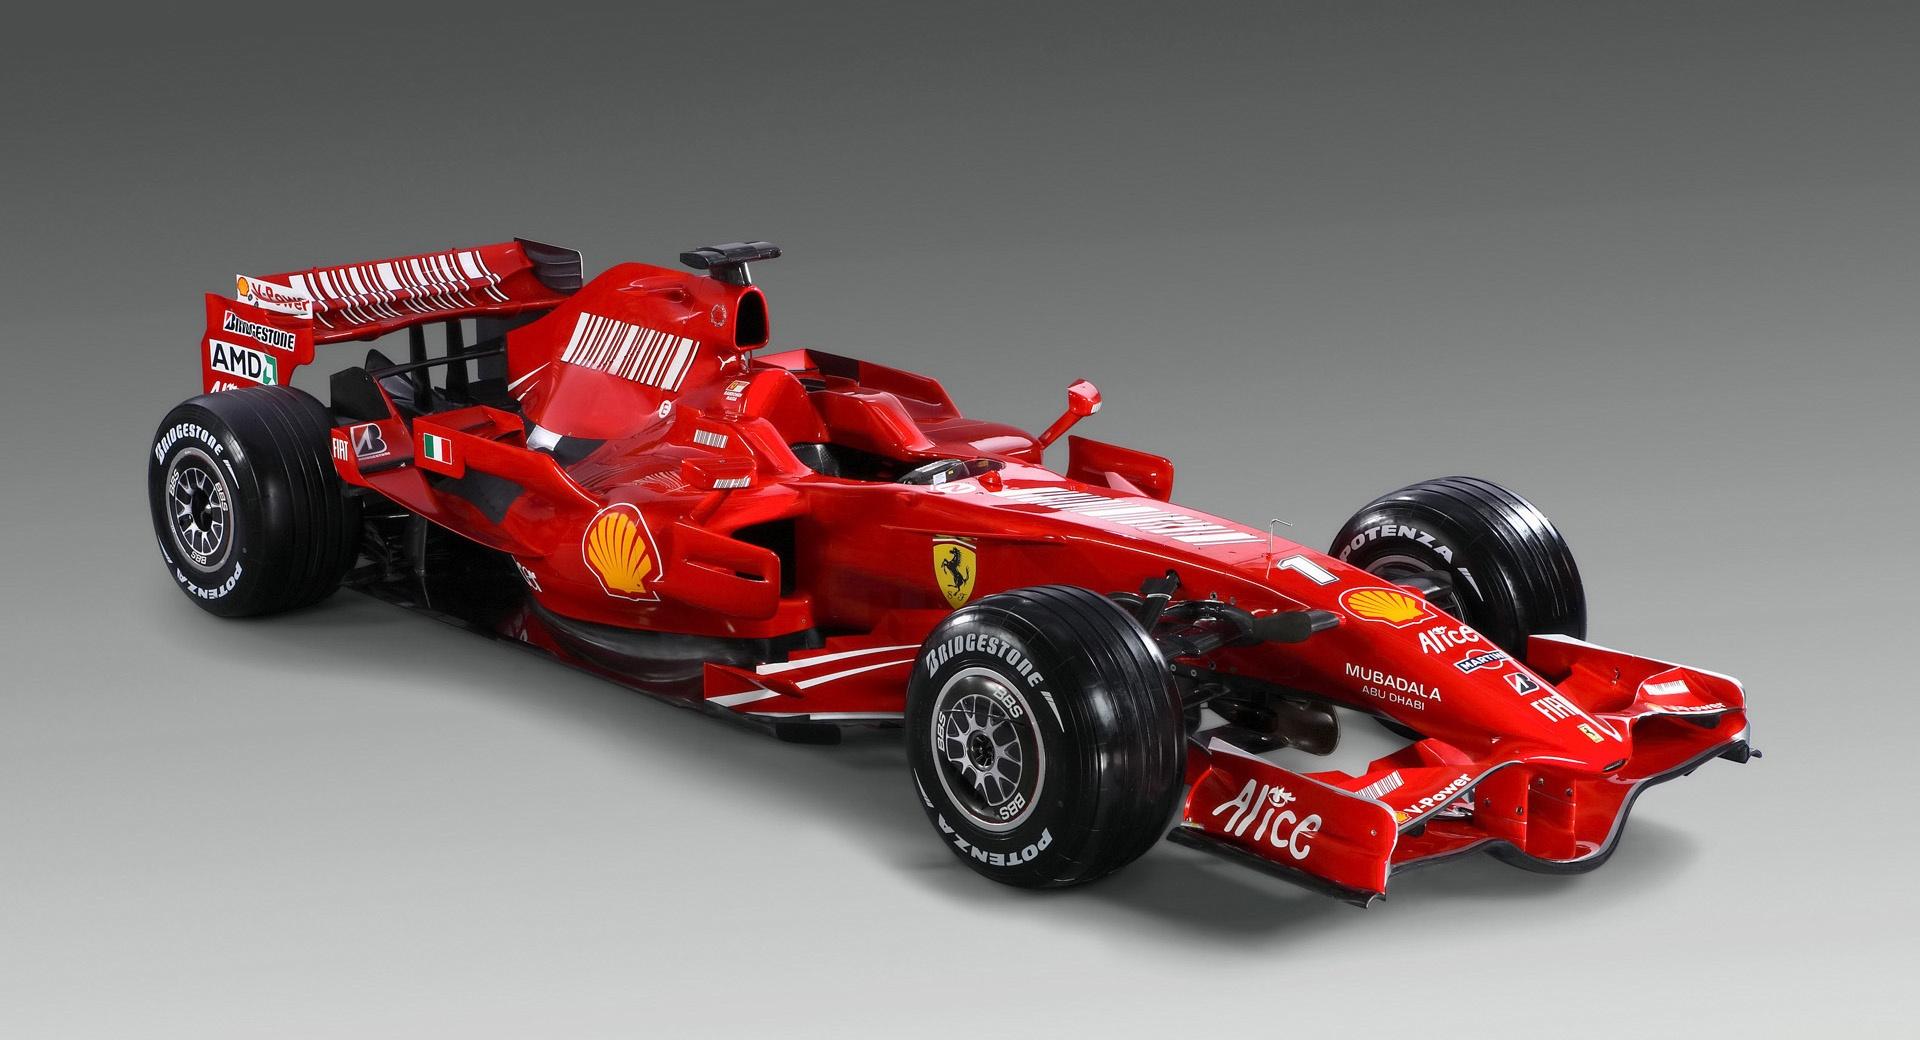 Formula 1 Ferrari F2008 at 1024 x 1024 iPad size wallpapers HD quality